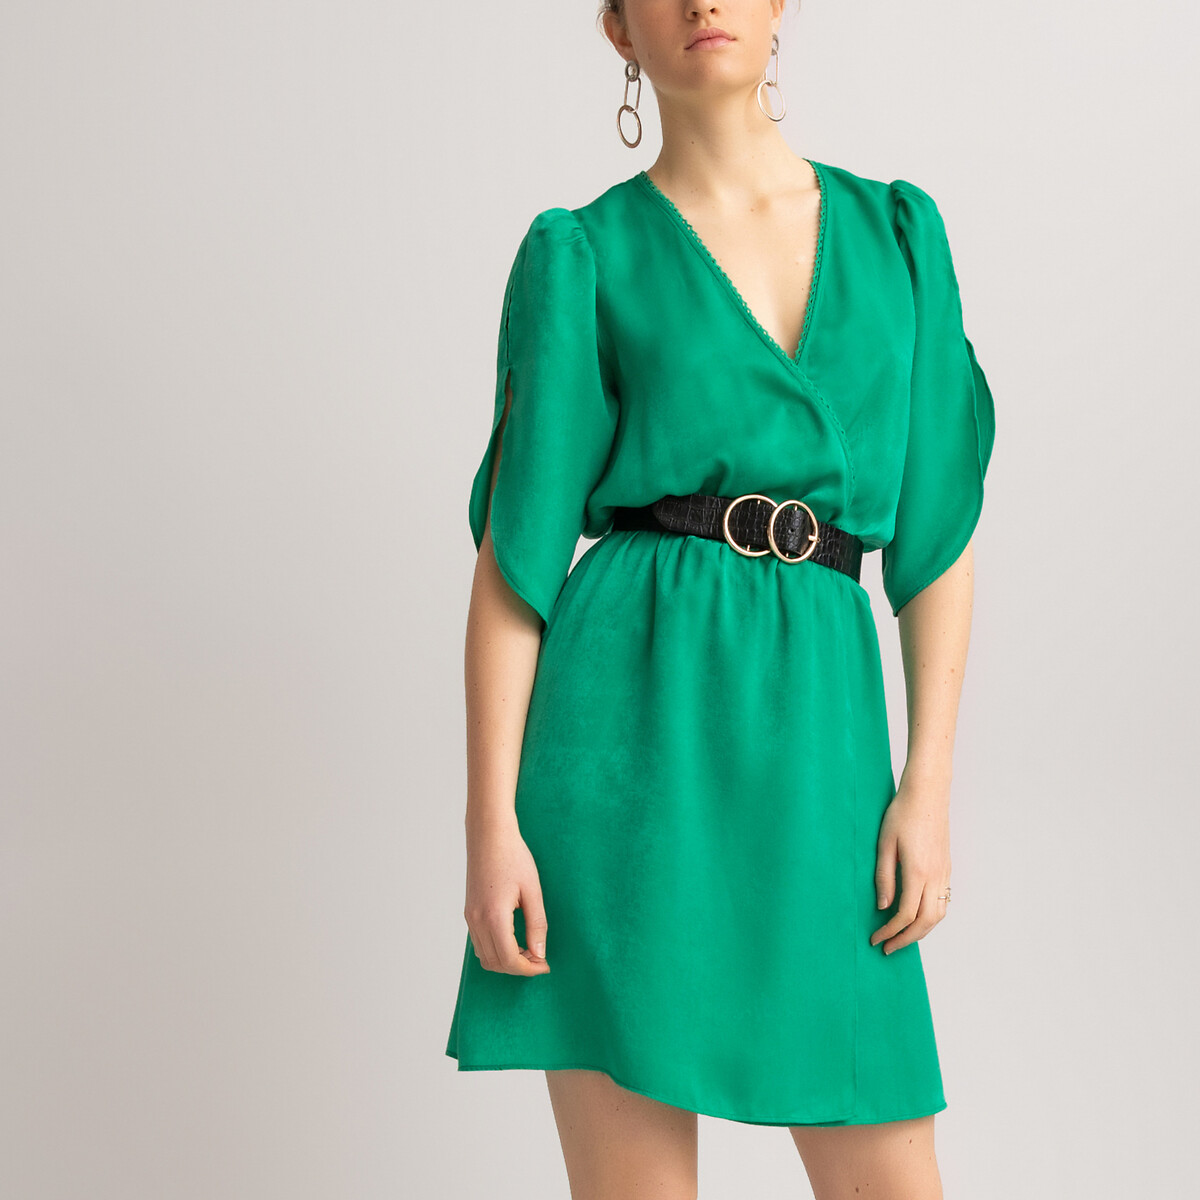 Платье LaRedoute Короткое с запахом короткие рукава 38 (FR) - 44 (RUS) зеленый, размер 38 (FR) - 44 (RUS) Короткое с запахом короткие рукава 38 (FR) - 44 (RUS) зеленый - фото 3